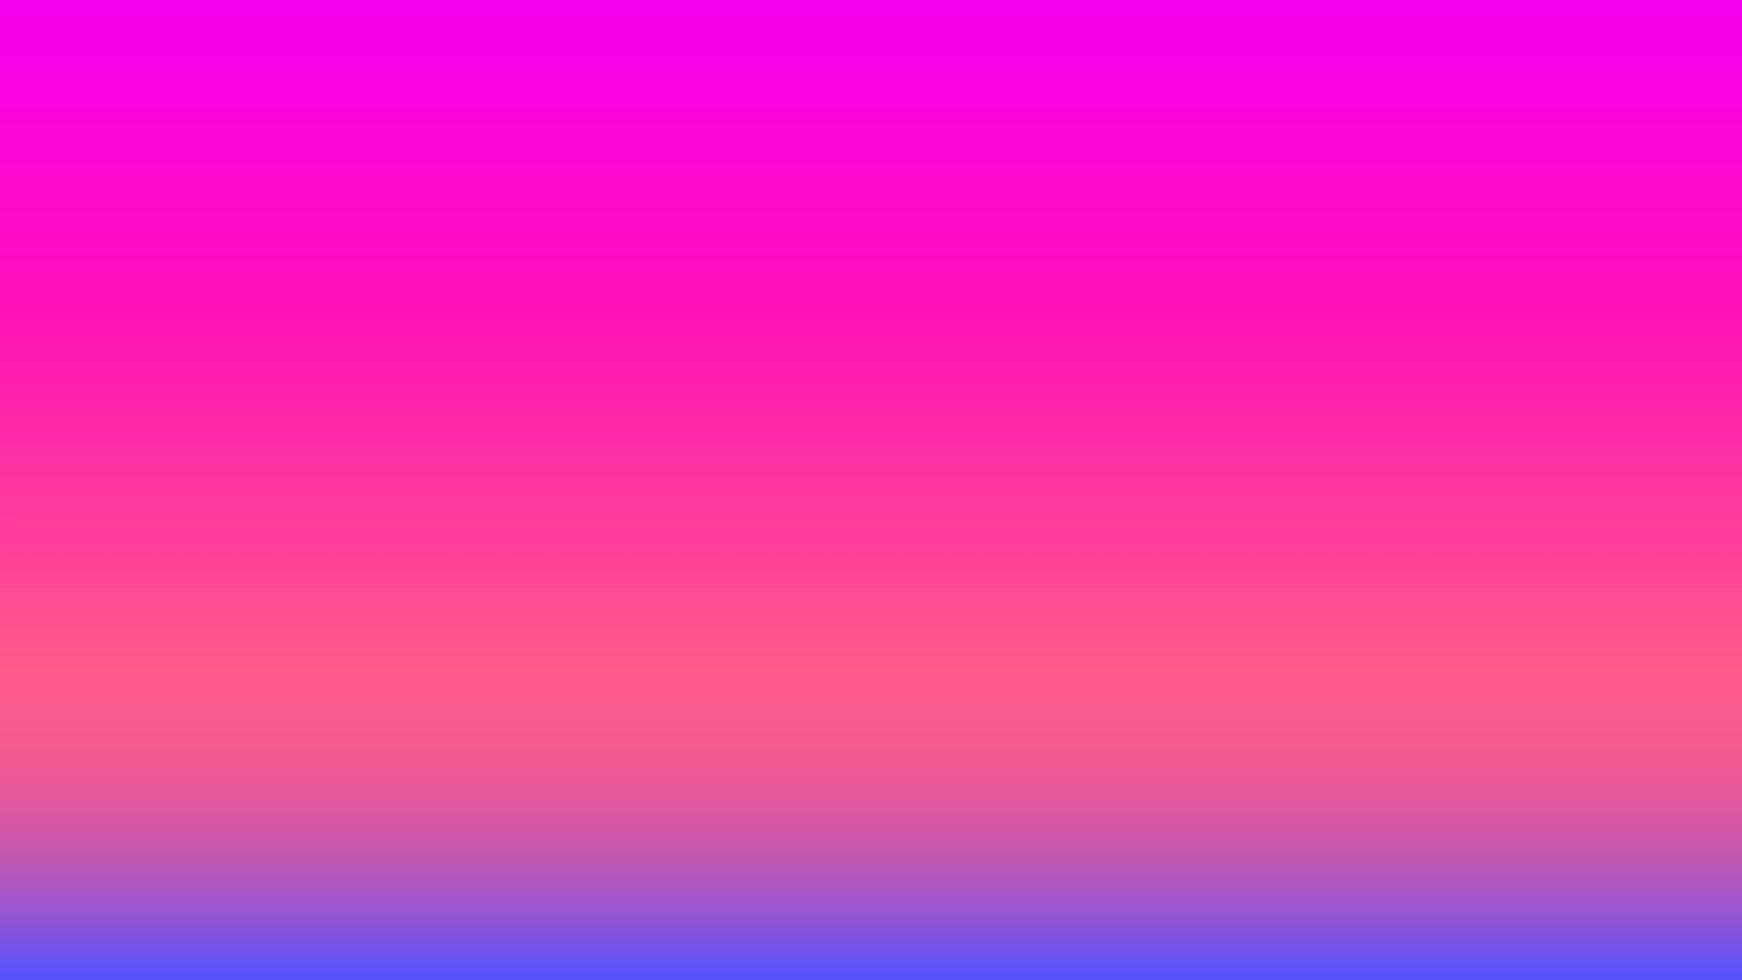 abstracte paarse en roze gradiëntachtergrond perfect voor promotie, presentatie, behang, ontwerp enz vector